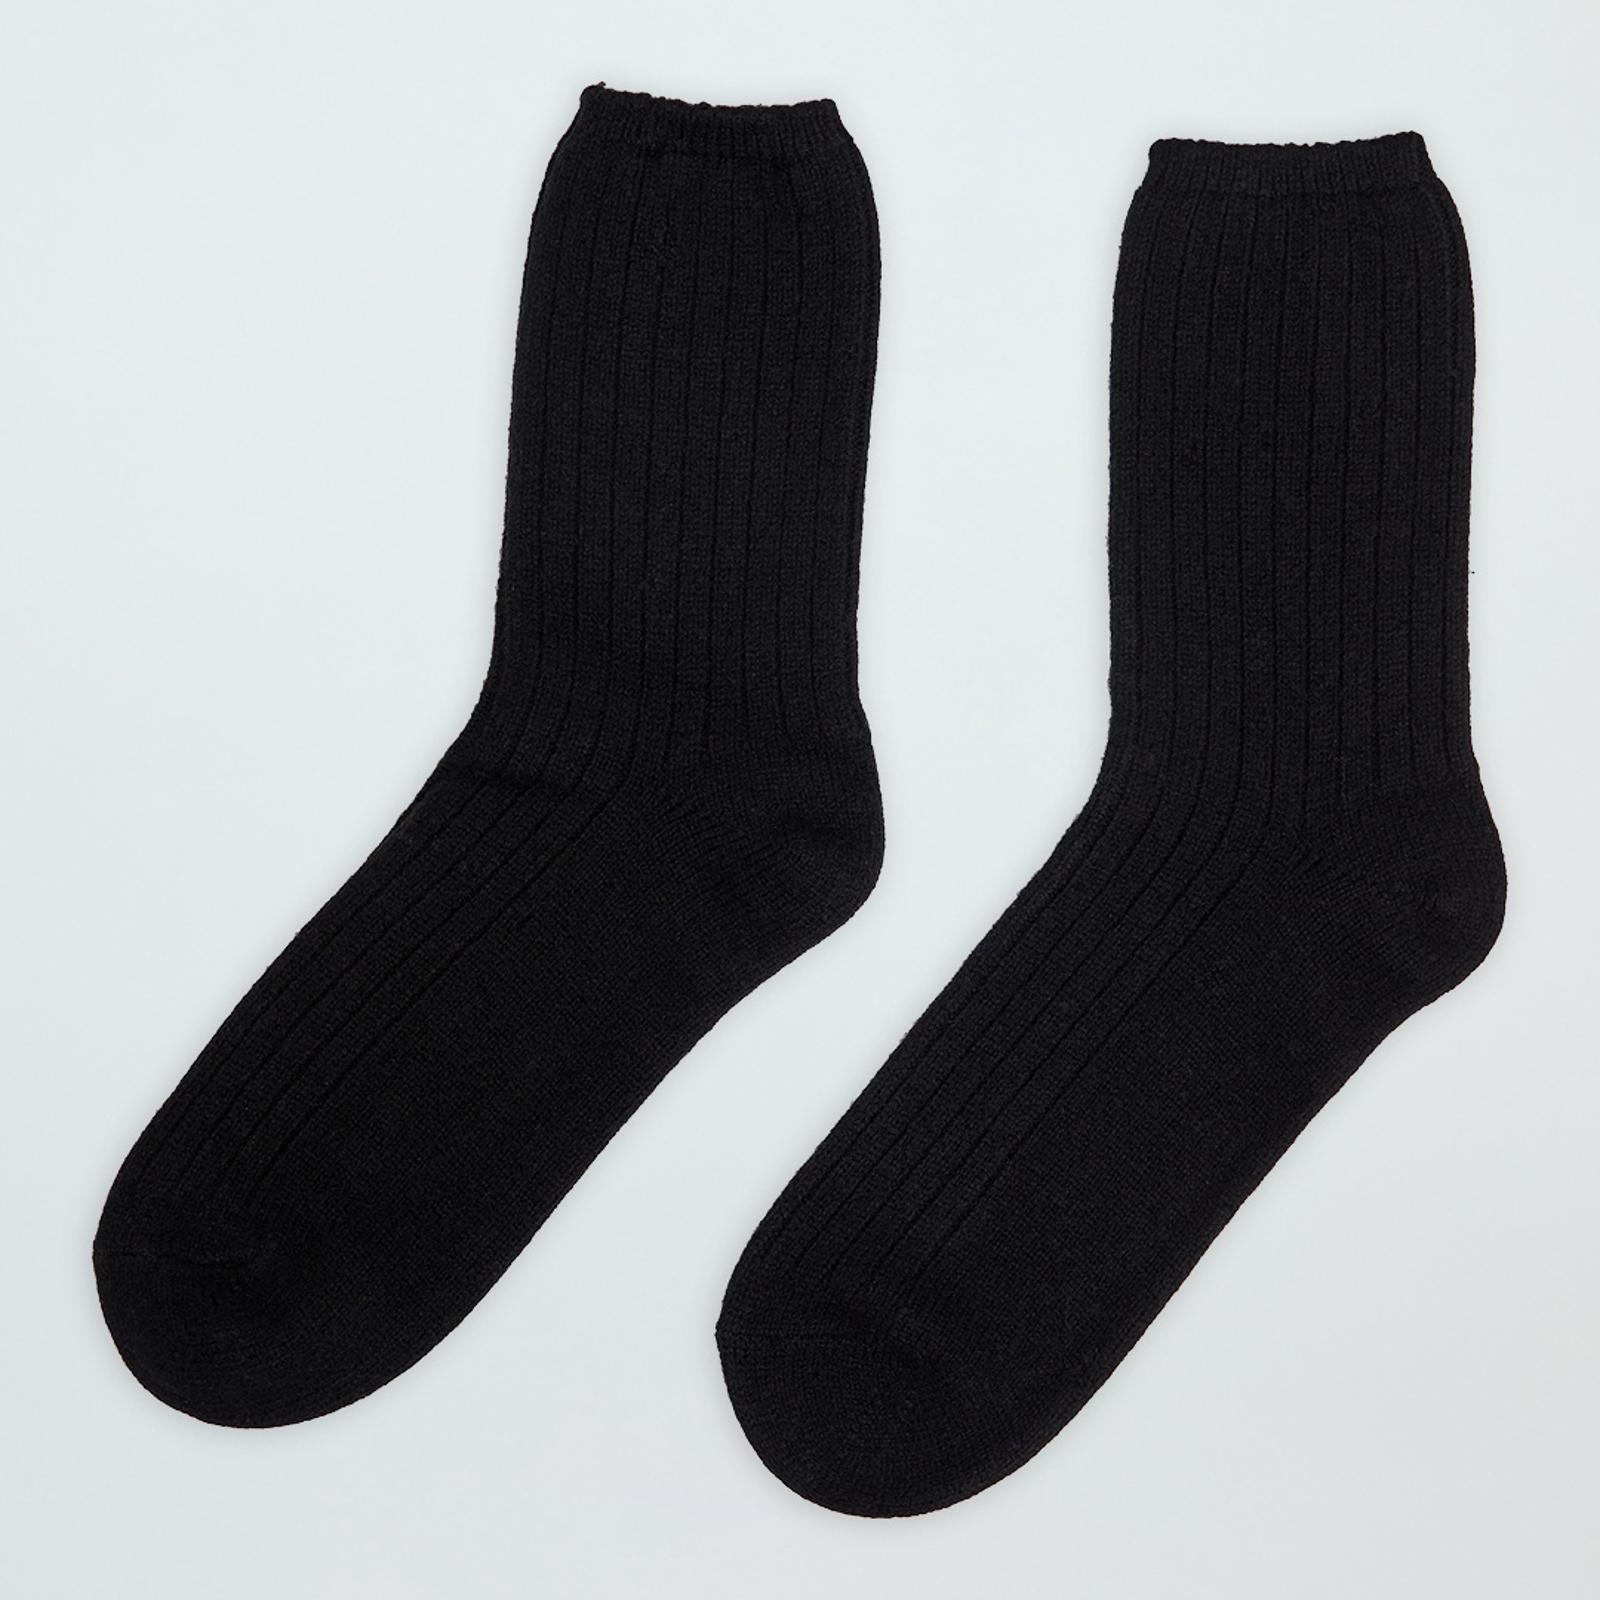 Men's Black Cashmere Socks - BrandAlley